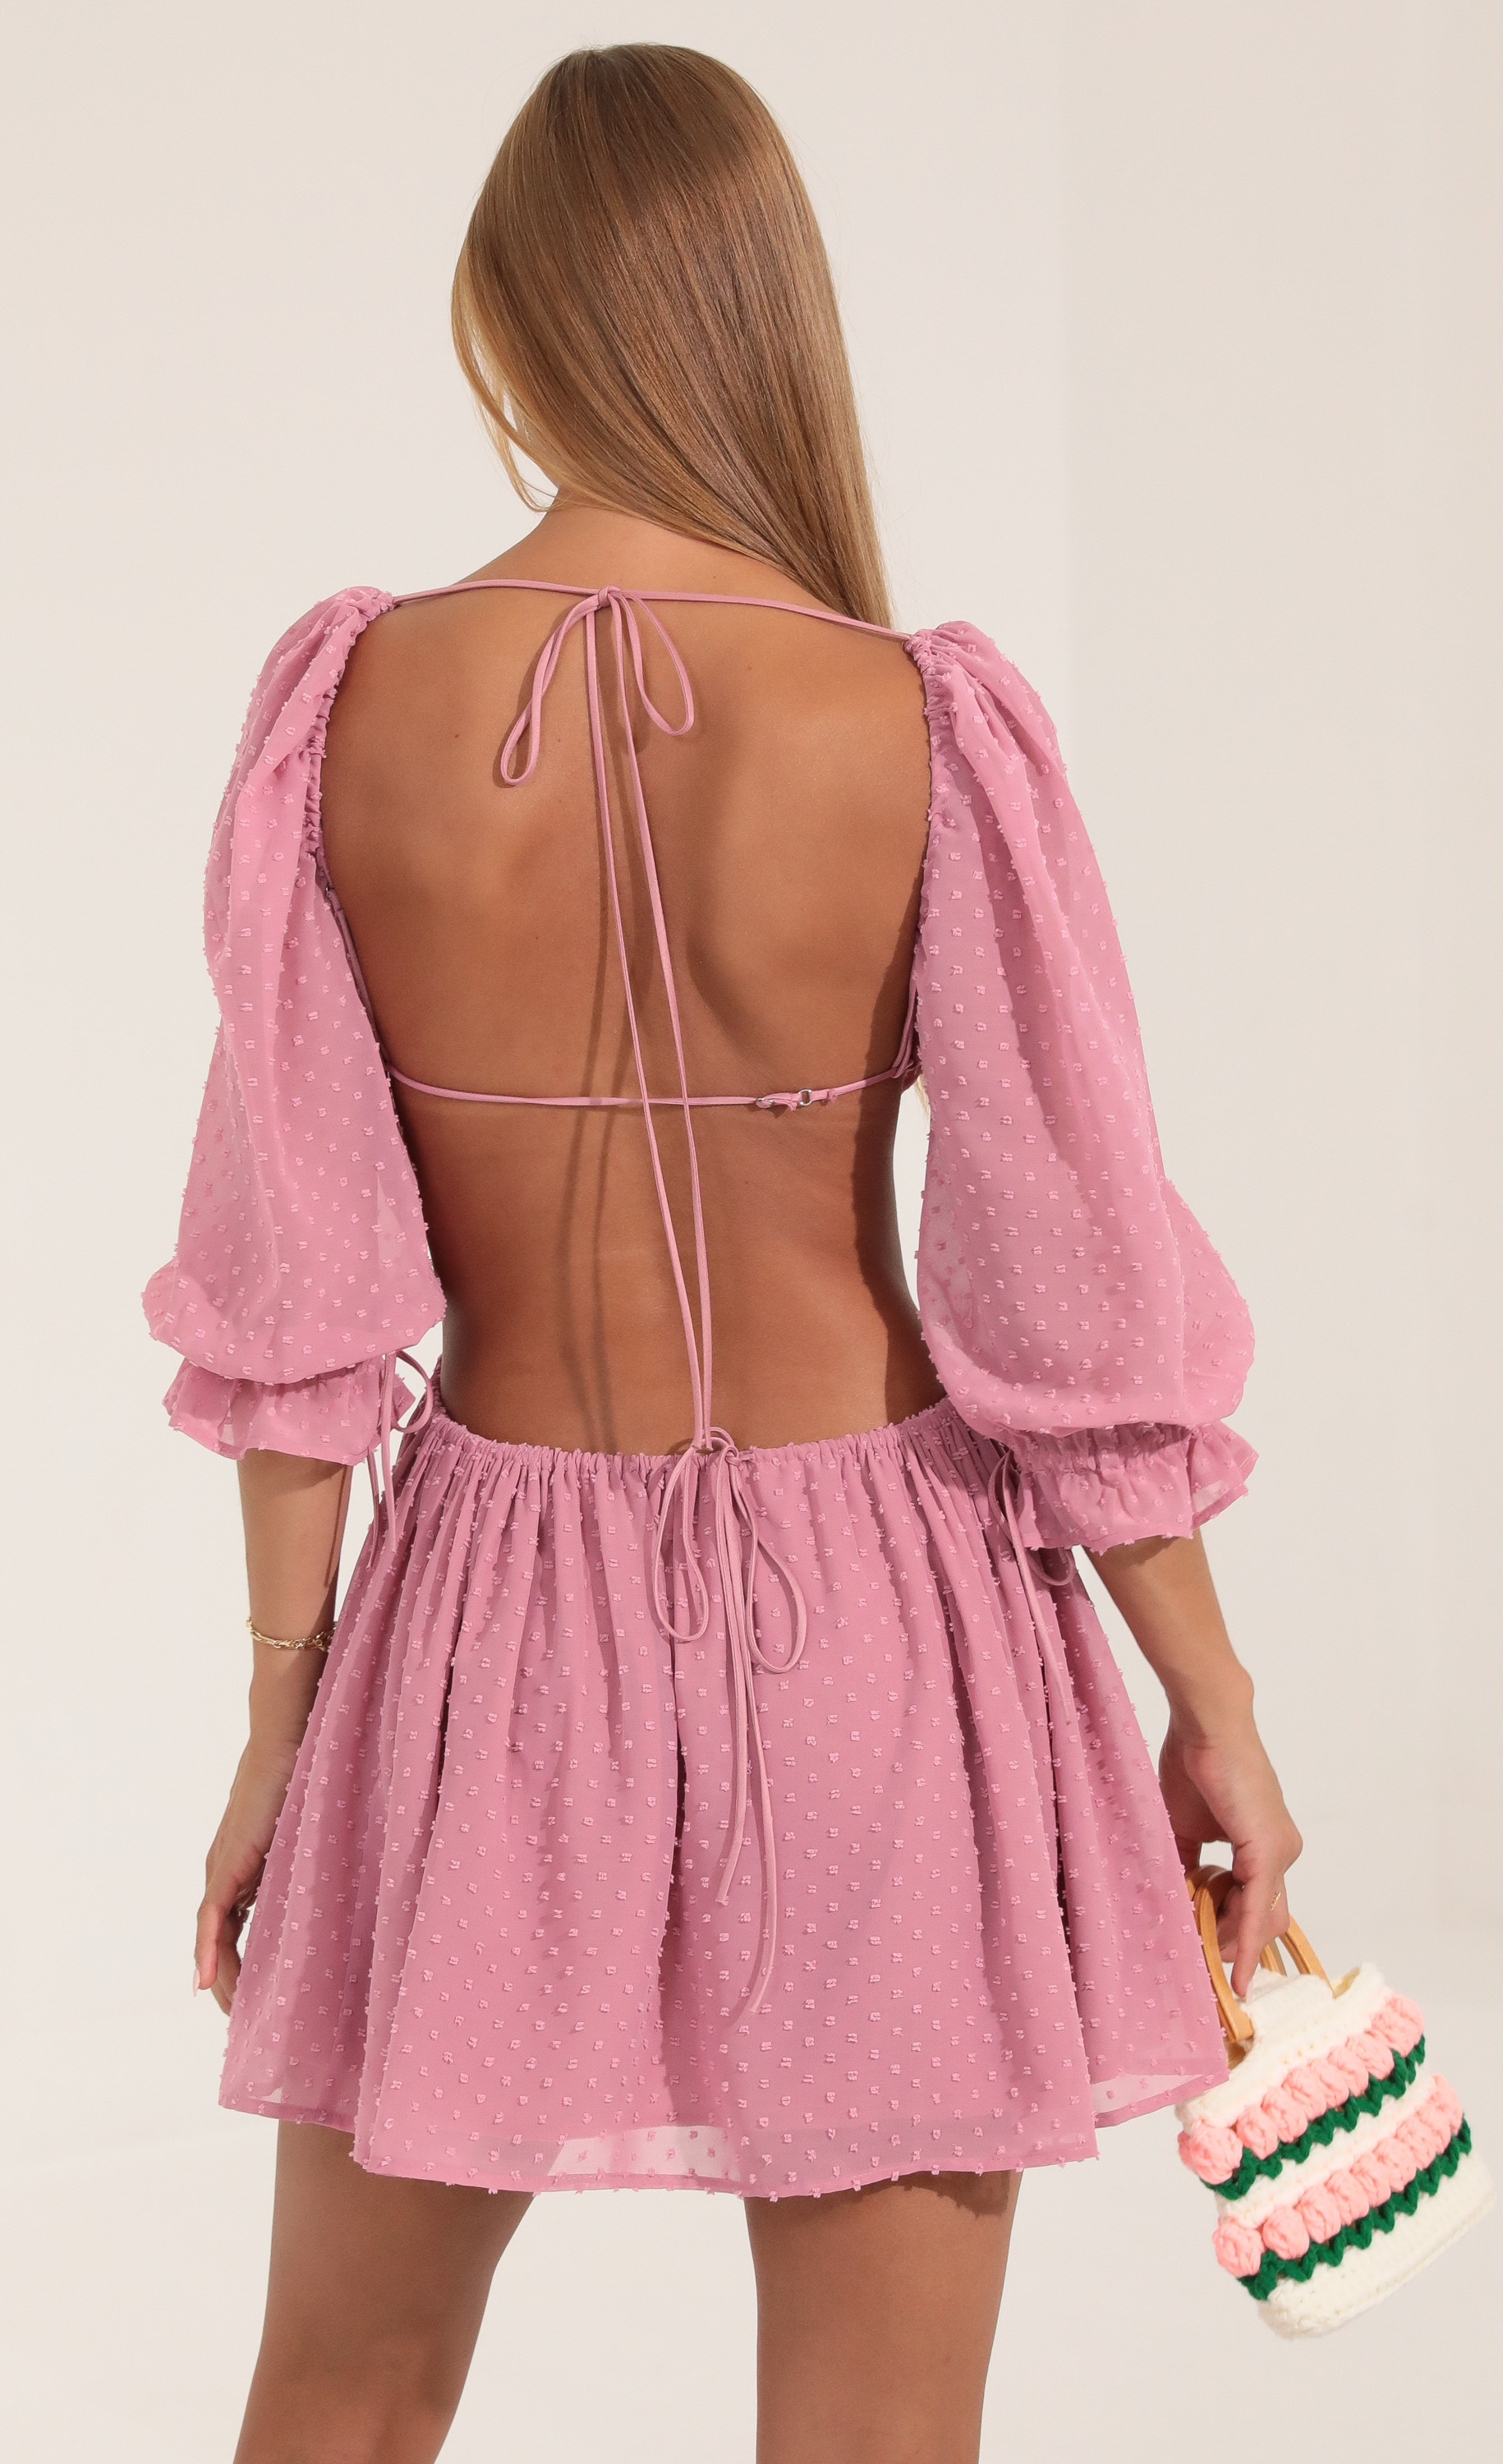 Sequin Puff Sleeve Bodysuit in Pink